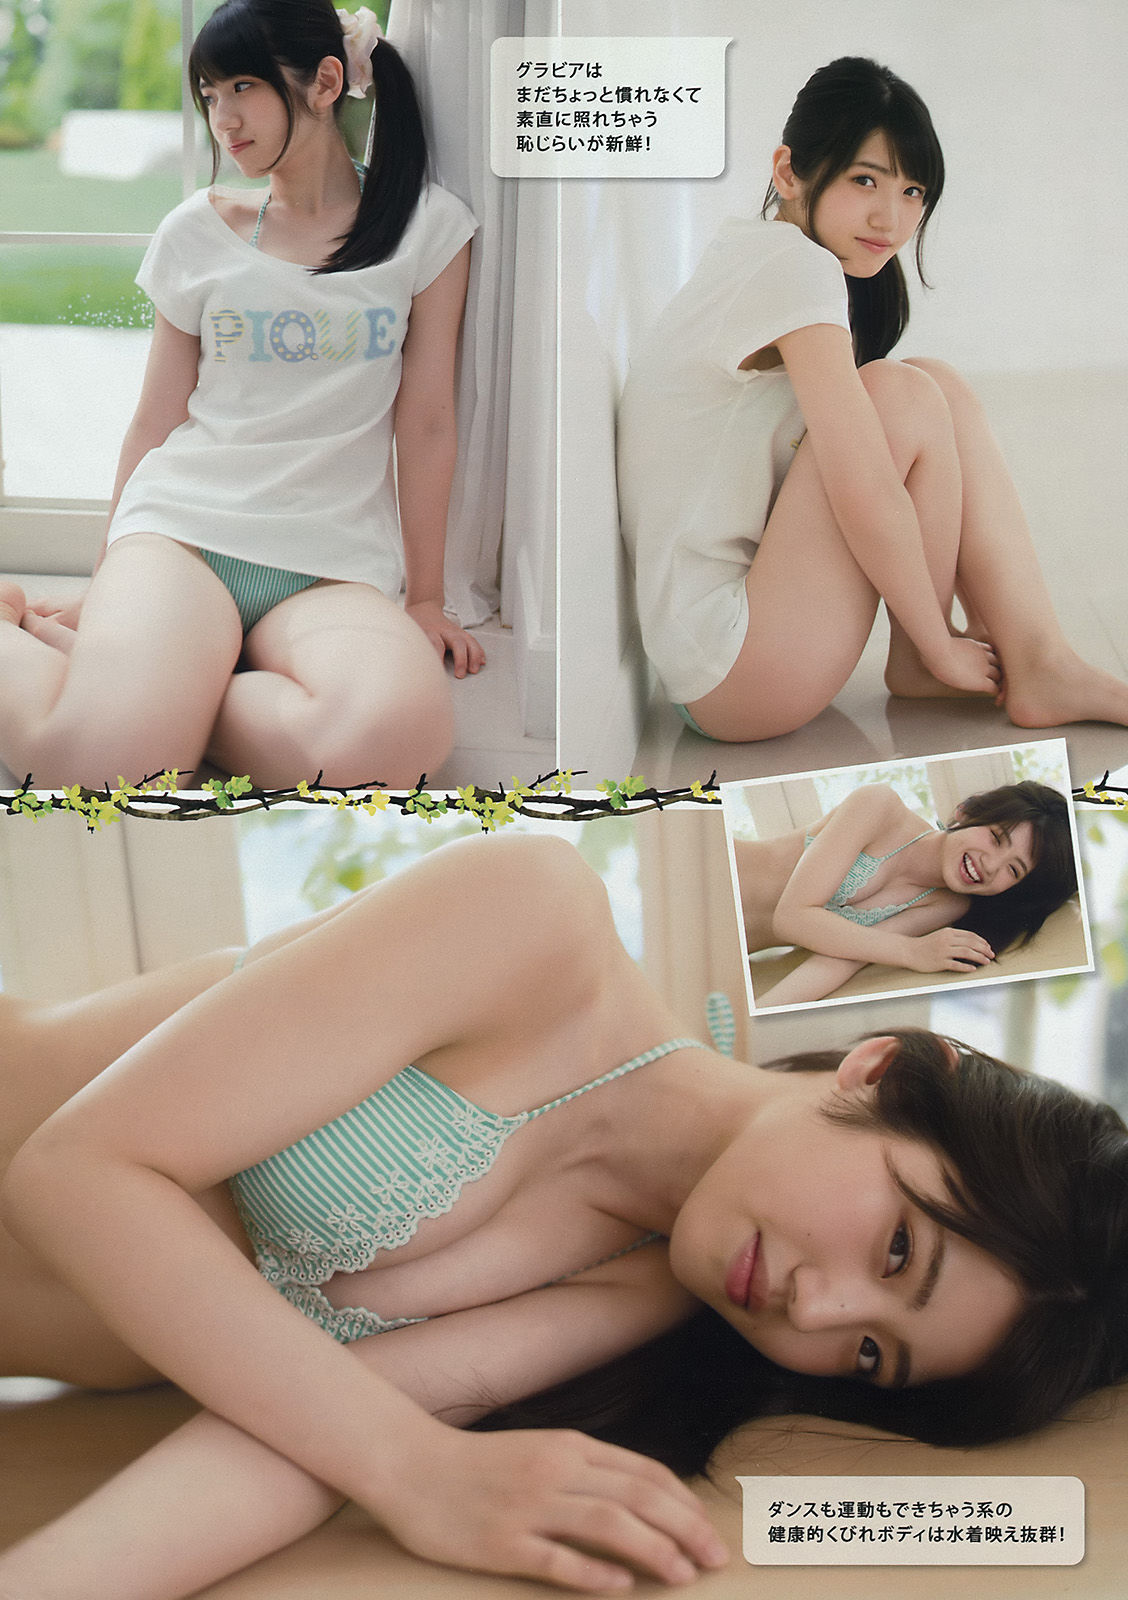 [Young Magazine] Okawa Blue, Tano Yuka, Murayama Ayaki 2015 No.31 Photo Magazine Page 12 No.f34450